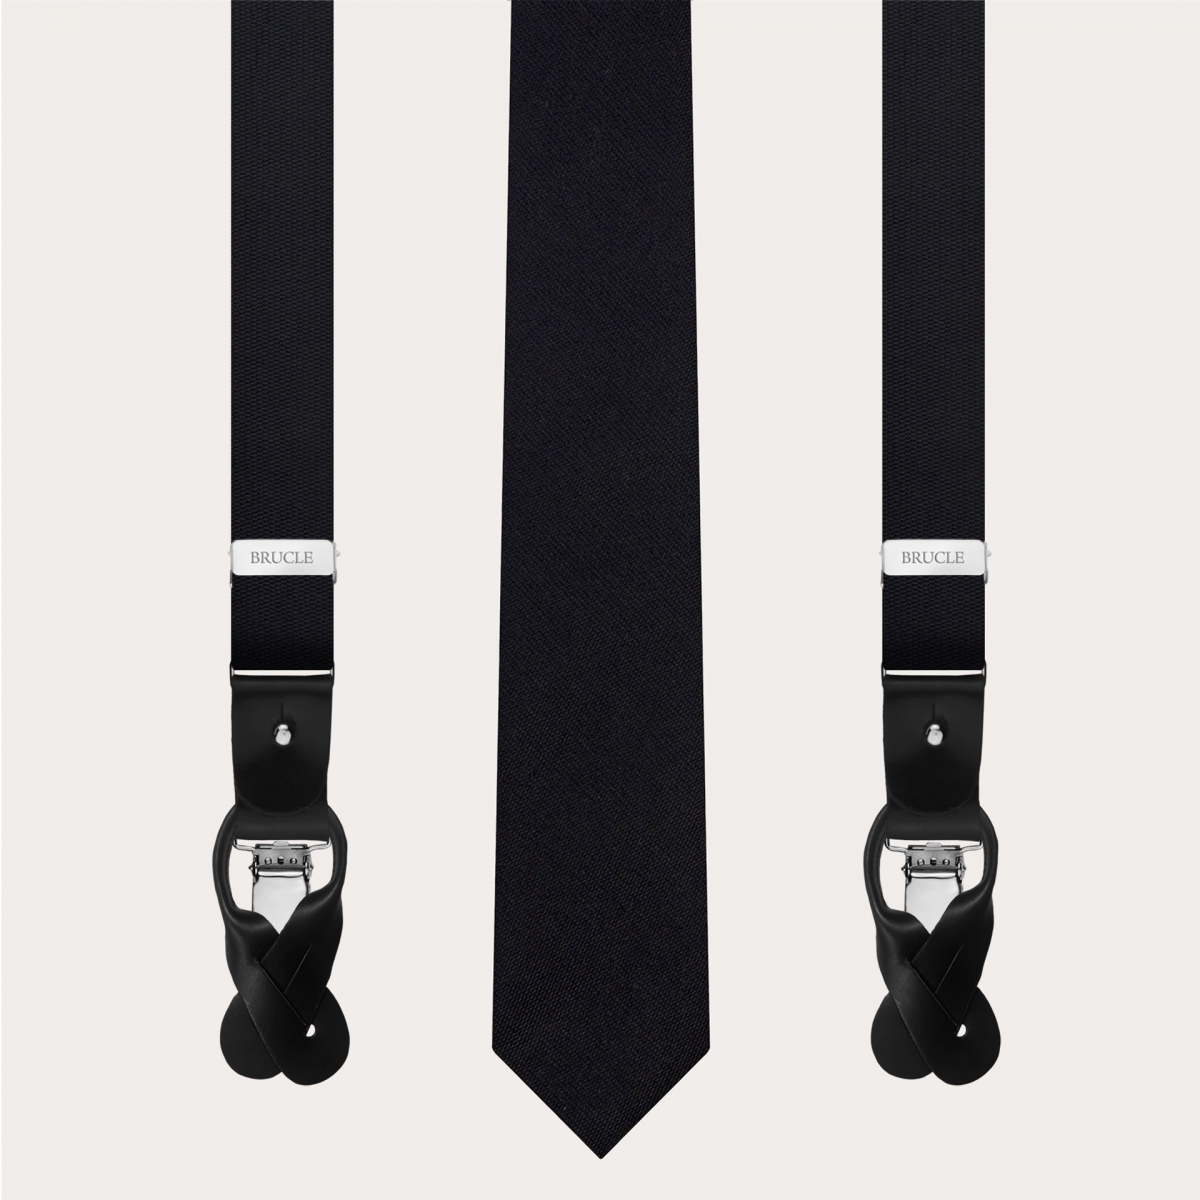 Bretelle e cravatta strette coordinate in seta jacquard, nere